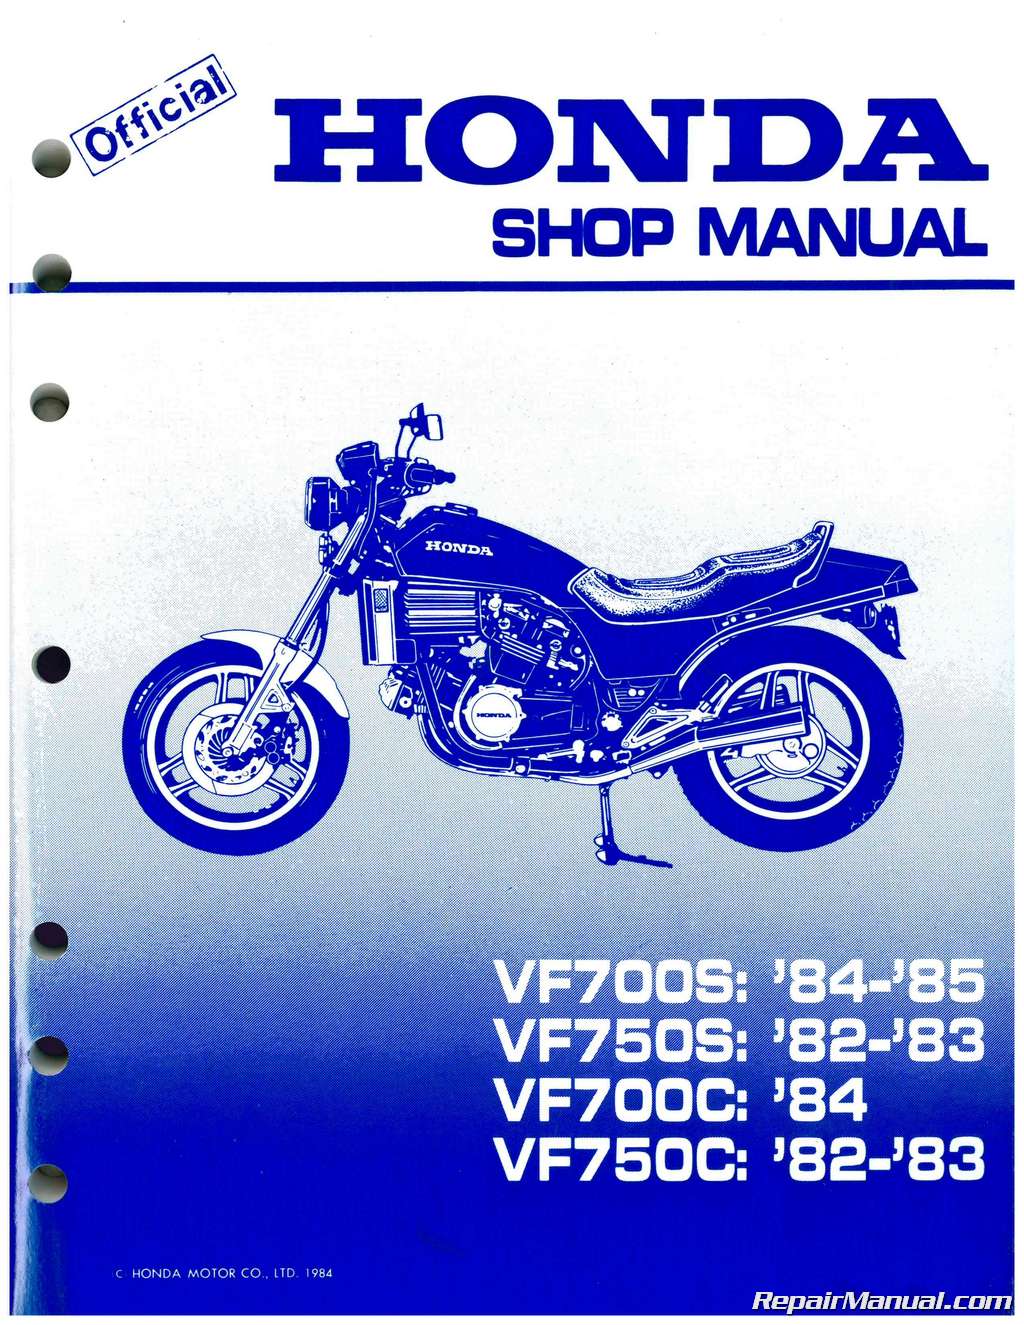 Repair manual for 1984 honda magna motorcycle #3